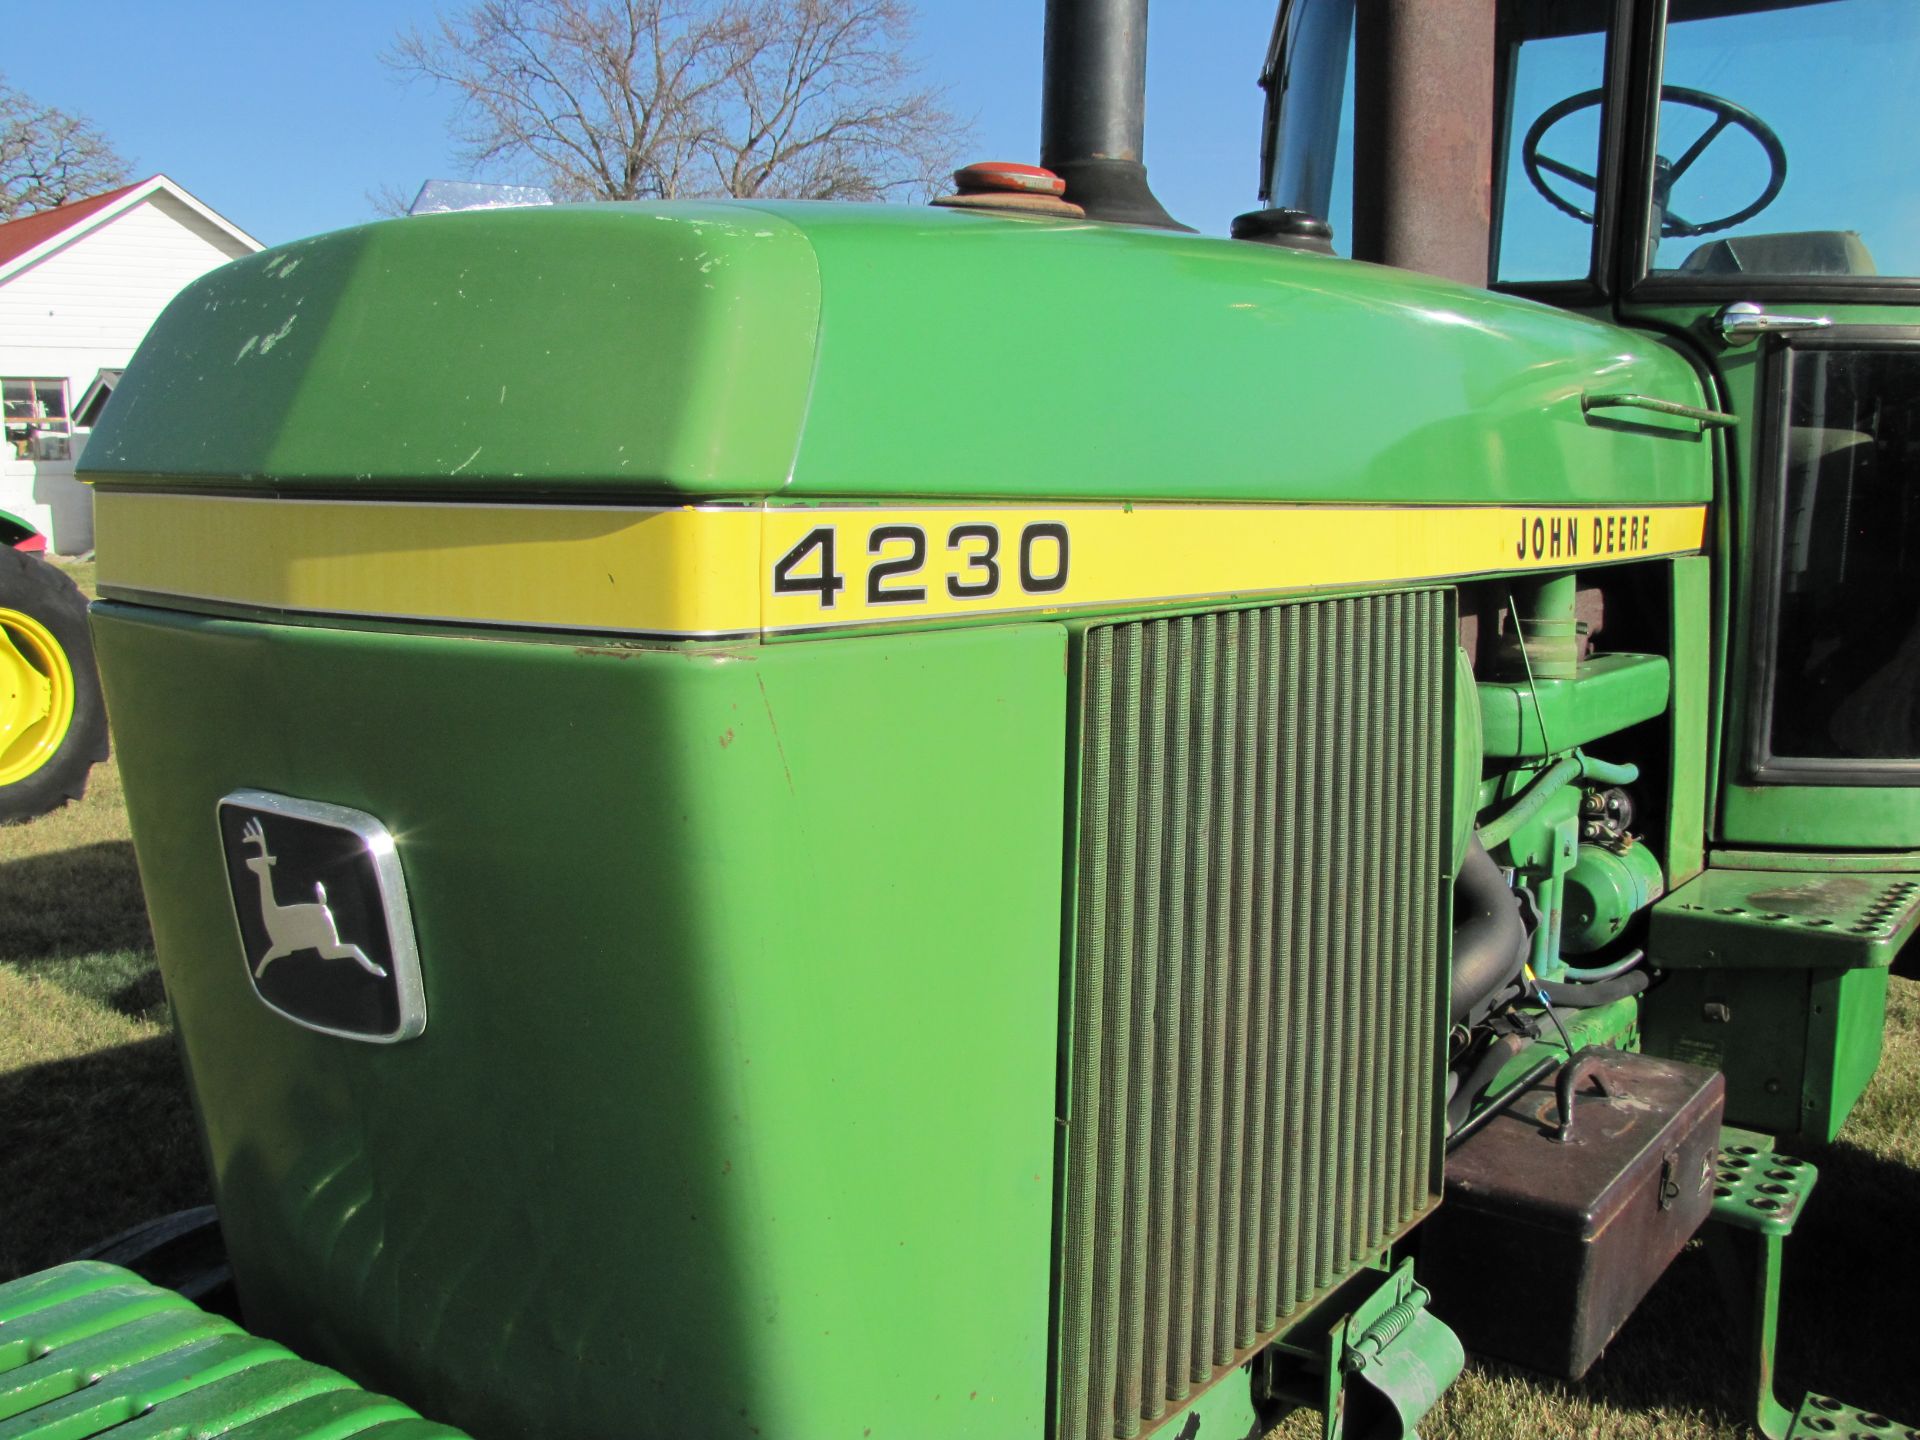 John Deere 4230 tractor - Image 10 of 49